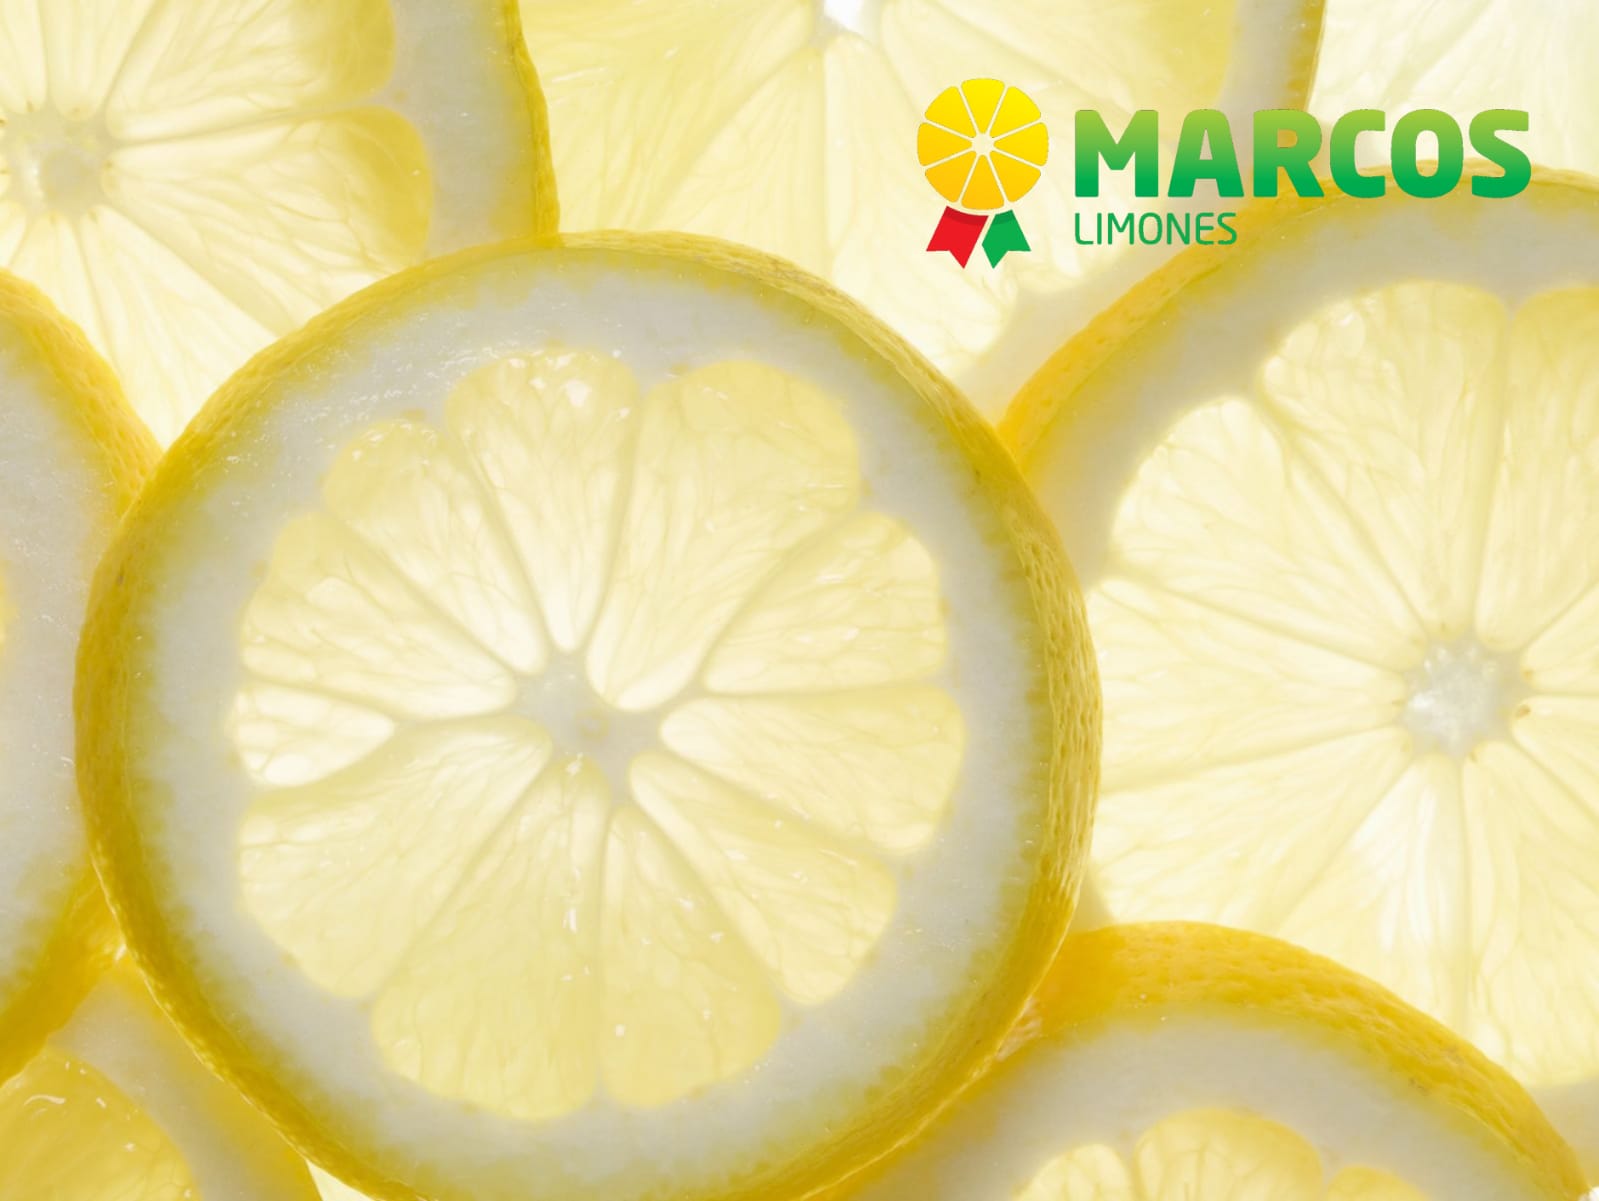 improtacion y exportacion de citricos limones